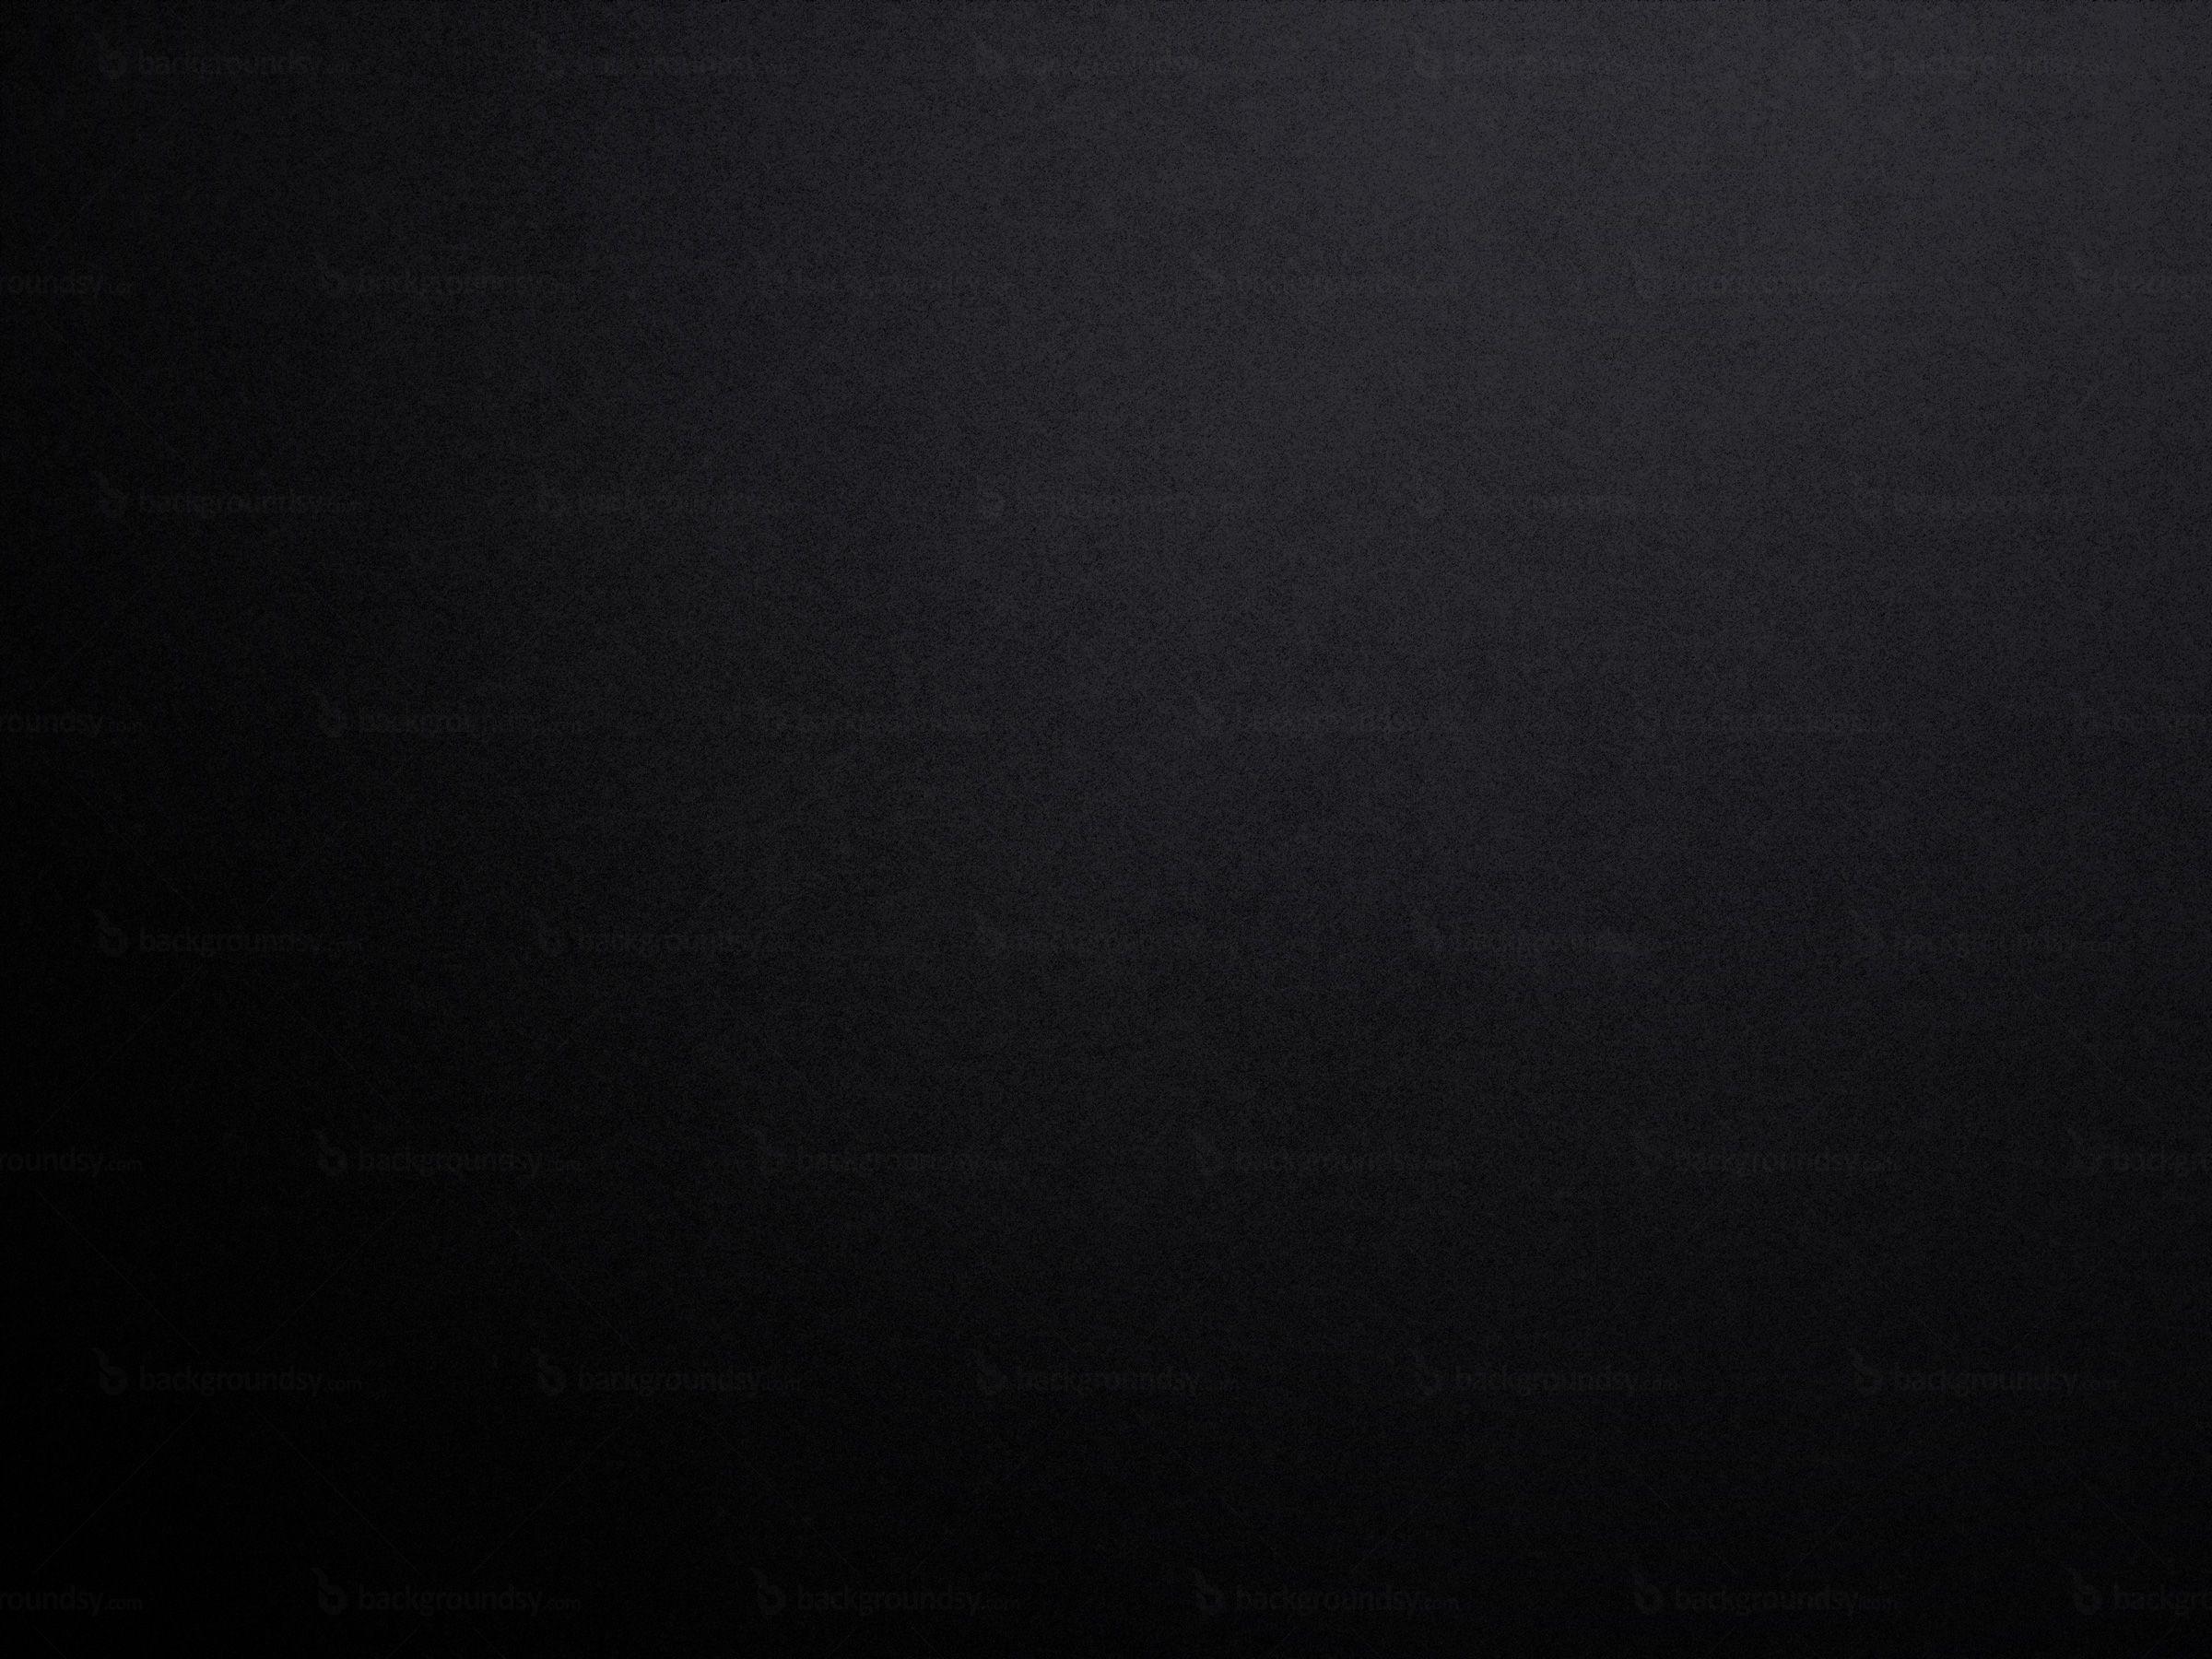 Matte Black Backgrounds: Màu đen không bao giờ lỗi thời và đặc biệt hợp thời trang khi được kết hợp với chất liệu mờ đen tinh tế. Bức ảnh với nền đen mờ đẹp mắt sẽ tạo nên một bầu không khí trầm lắng, đầy nghệ thuật và tạo nên một điểm nhấn cho những chi tiết khác.